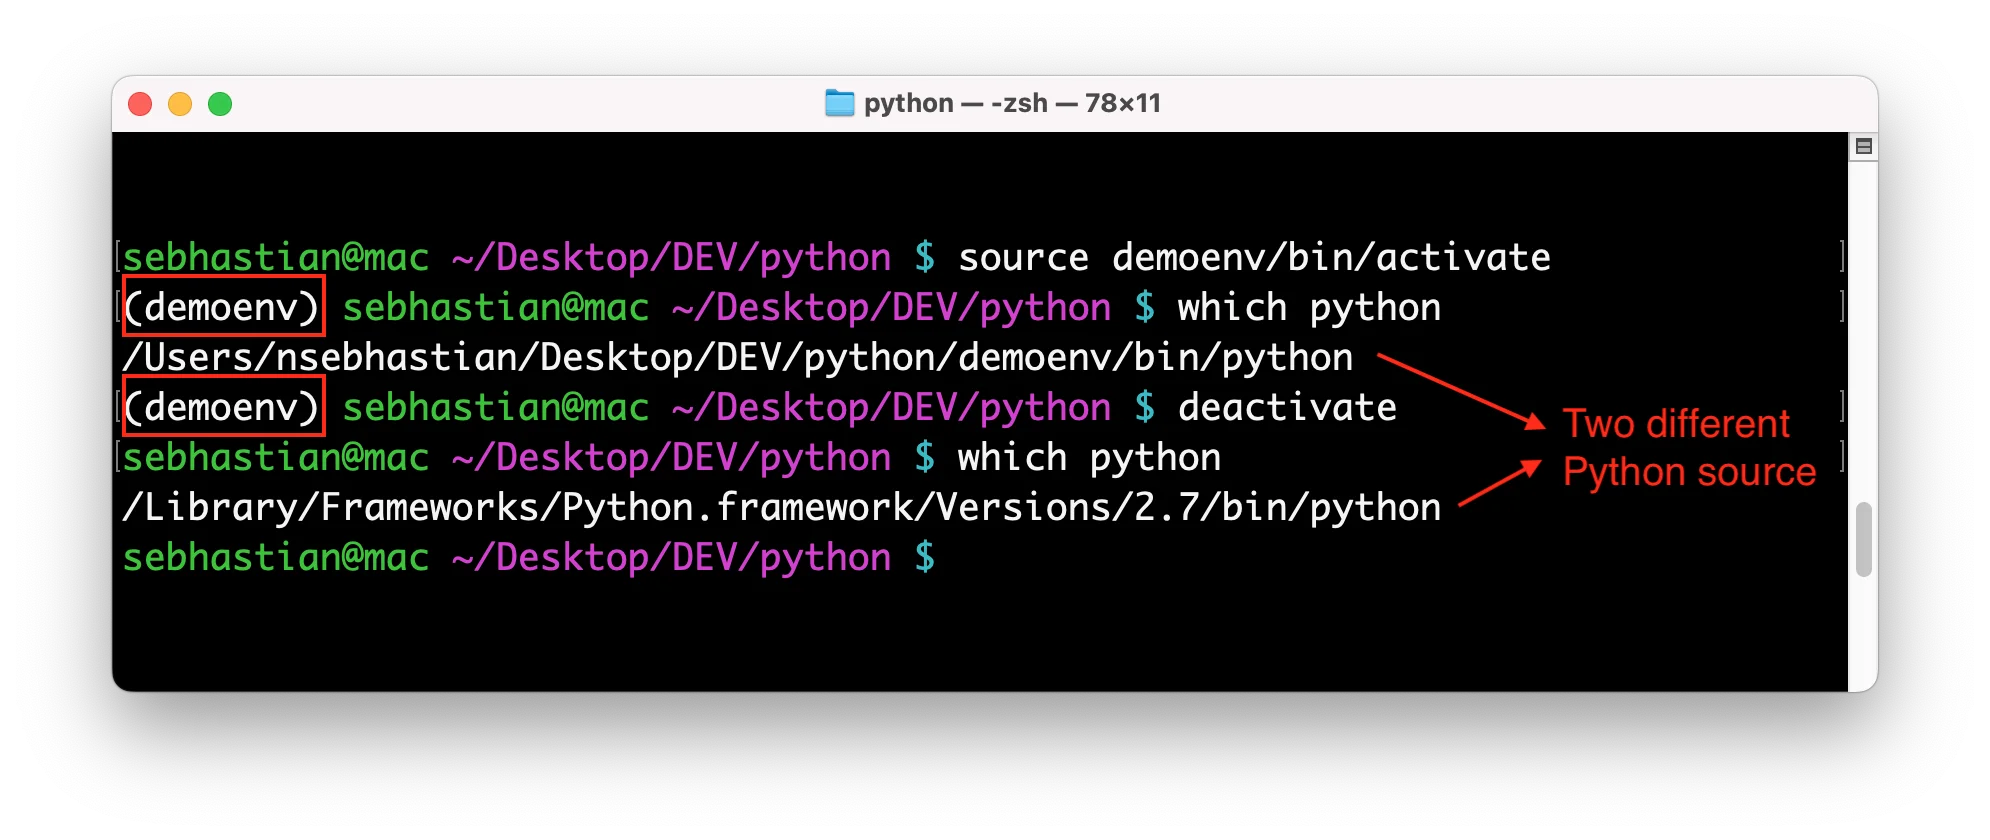 Python has an active venv environment